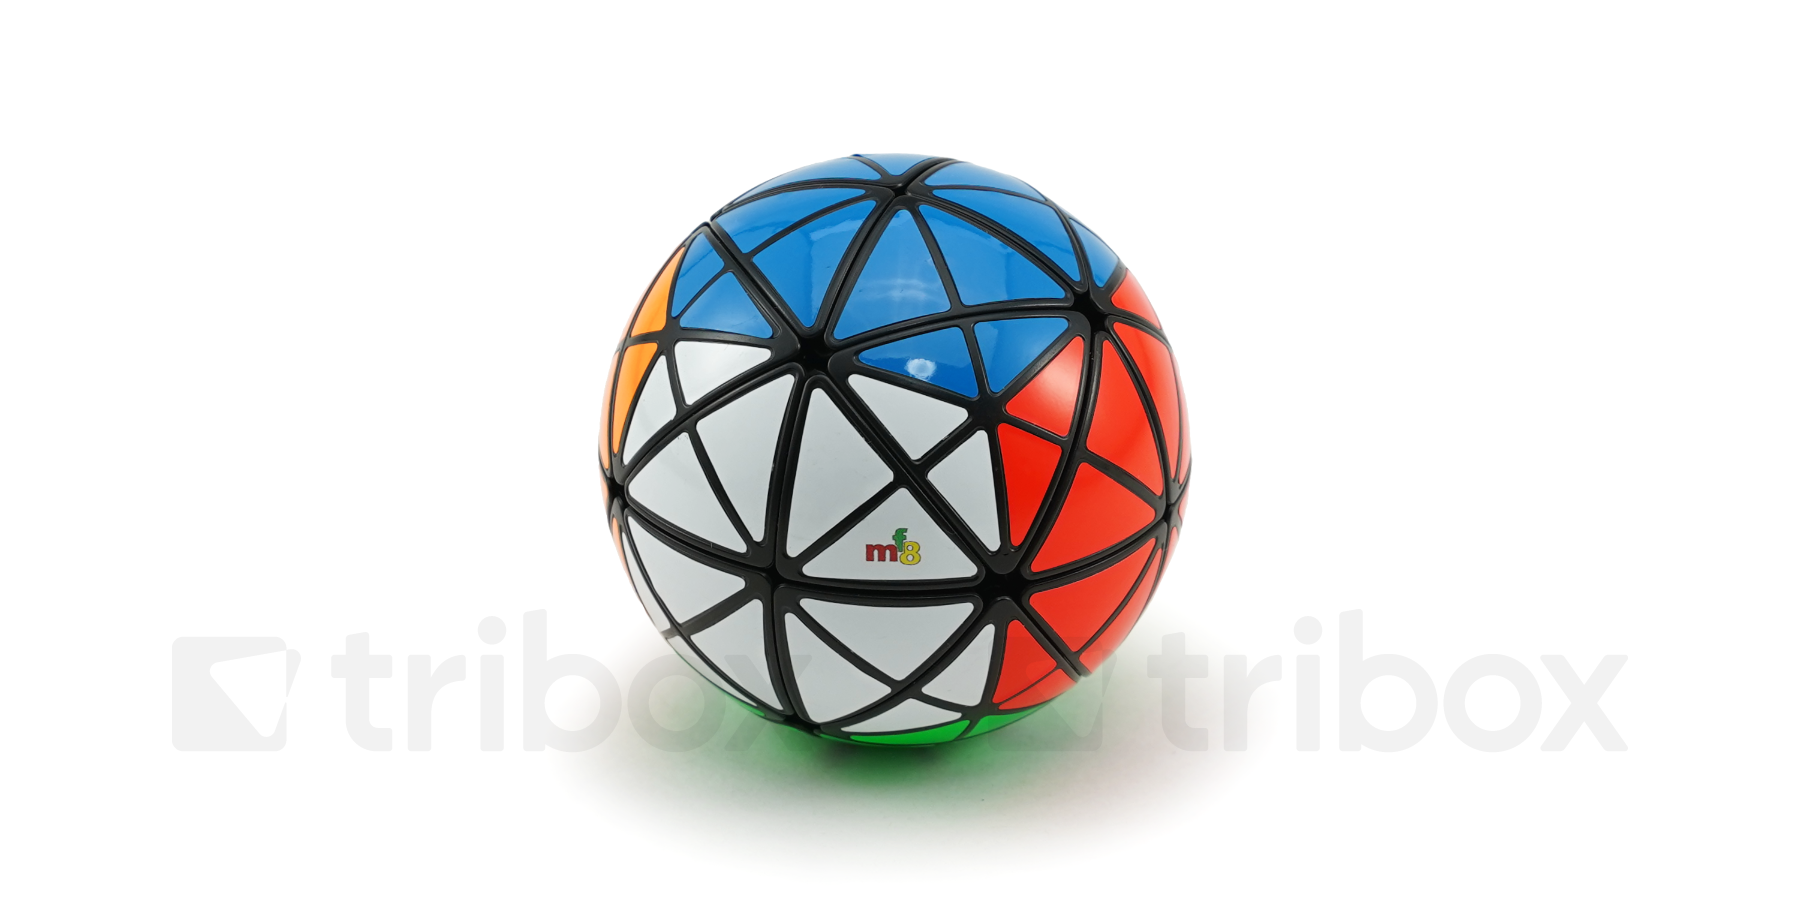 triboxストア / mf8 Rainbow Ball